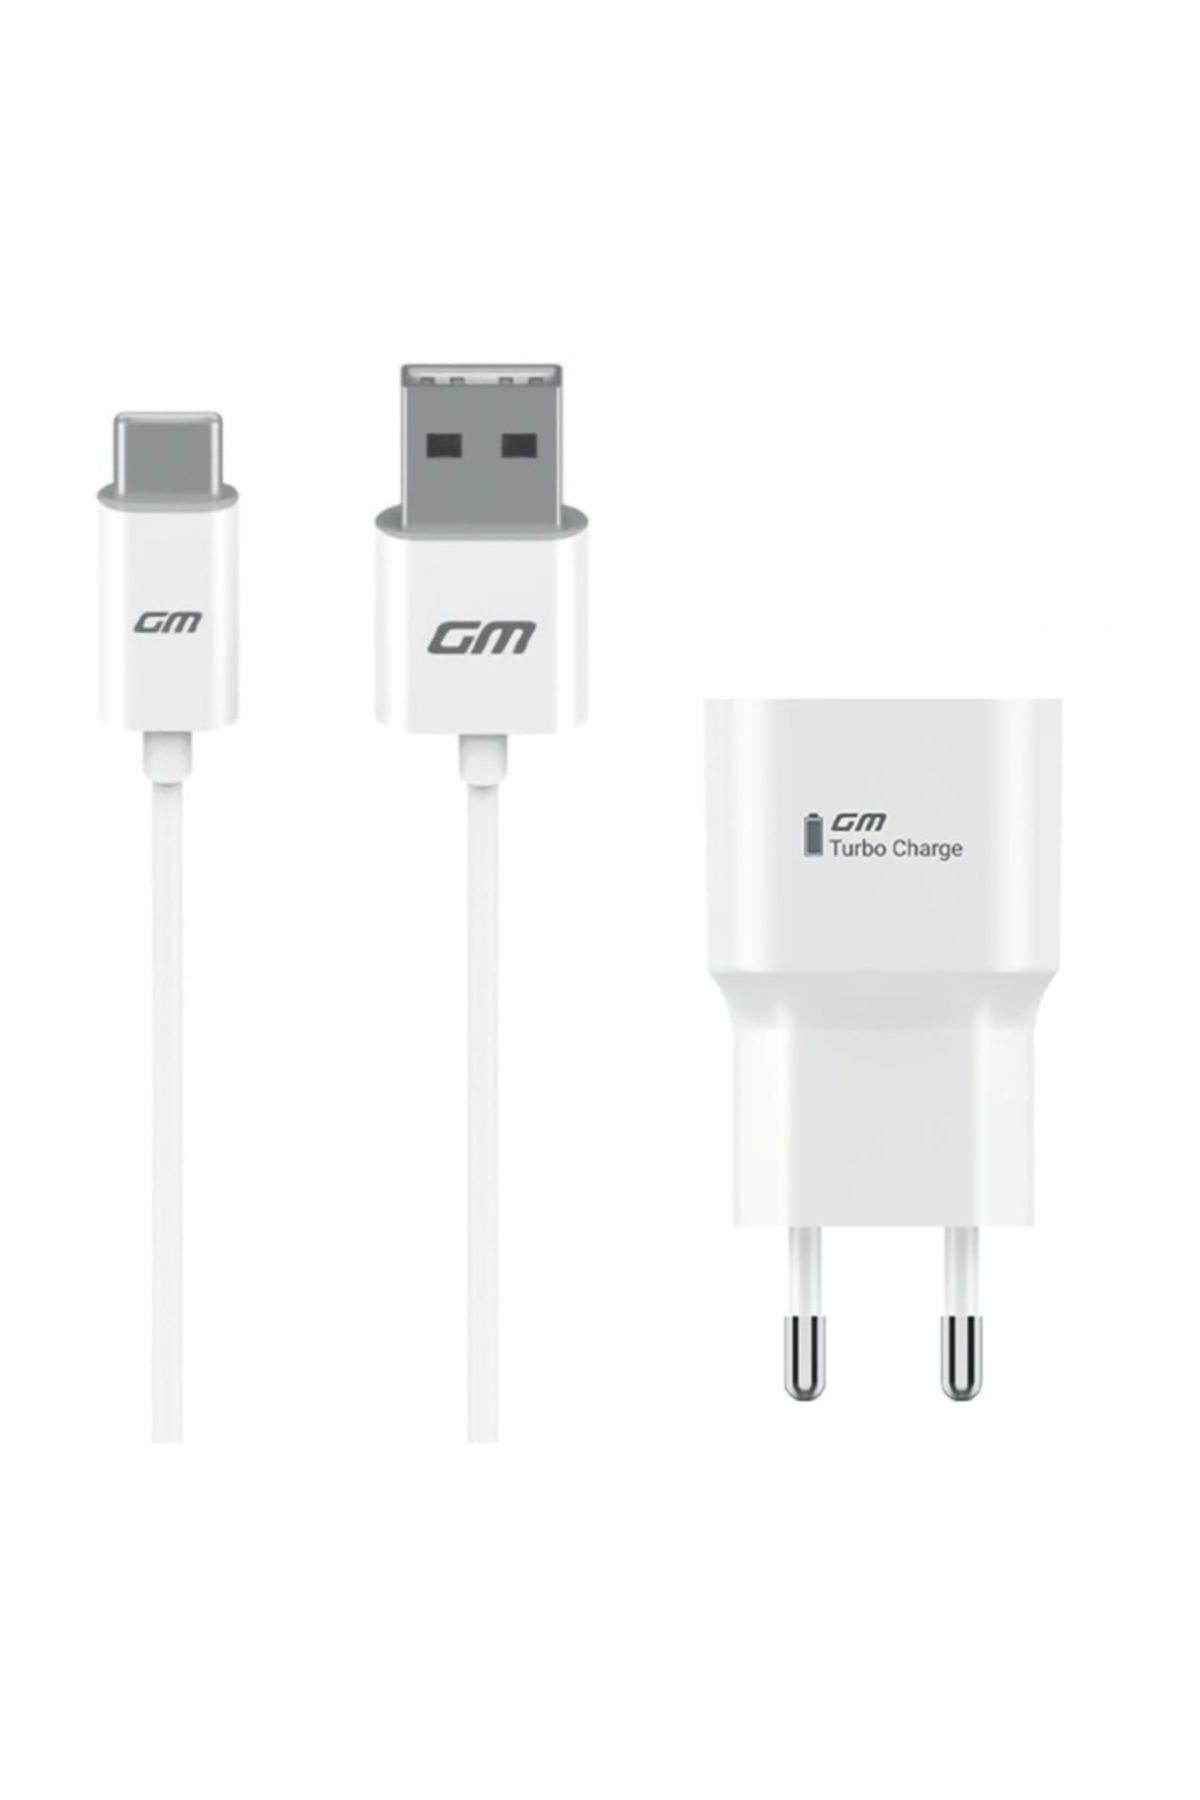 General Mobile Gm 9 Plus   Pro Type c Orijinal Şarj Aleti  Data Kablo  3 A Telpa Garantili